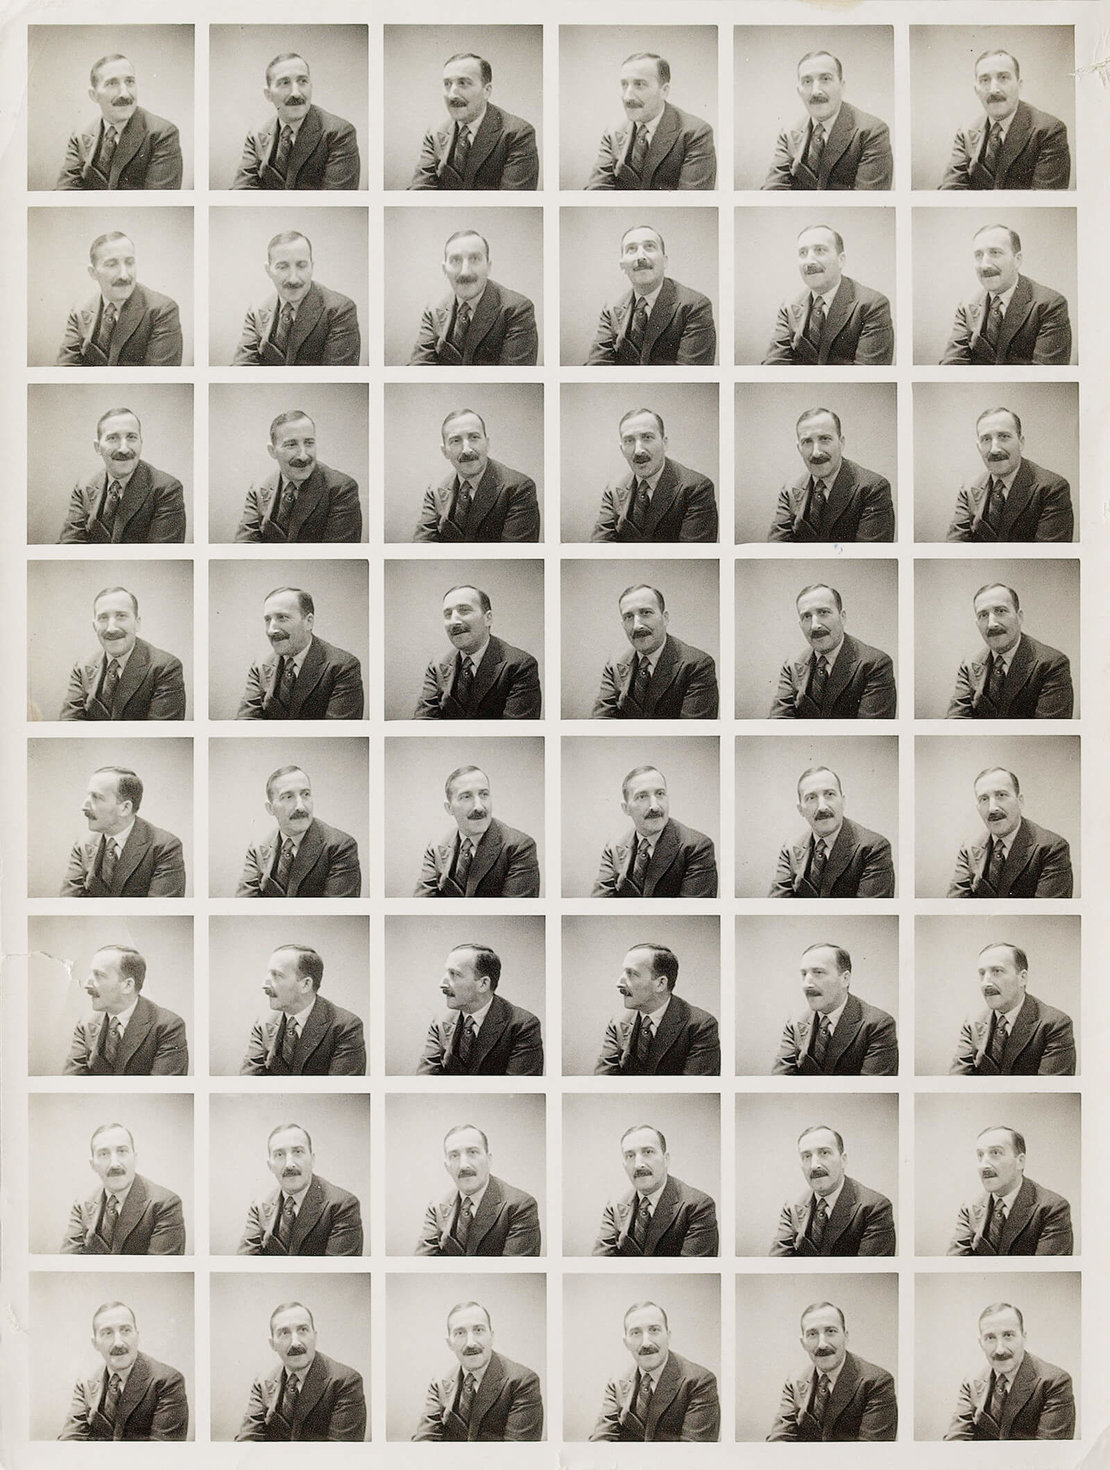 Passfotos von Stefan Zweig, London 1940, © Stefan Zweig Zentrum Salzburg 